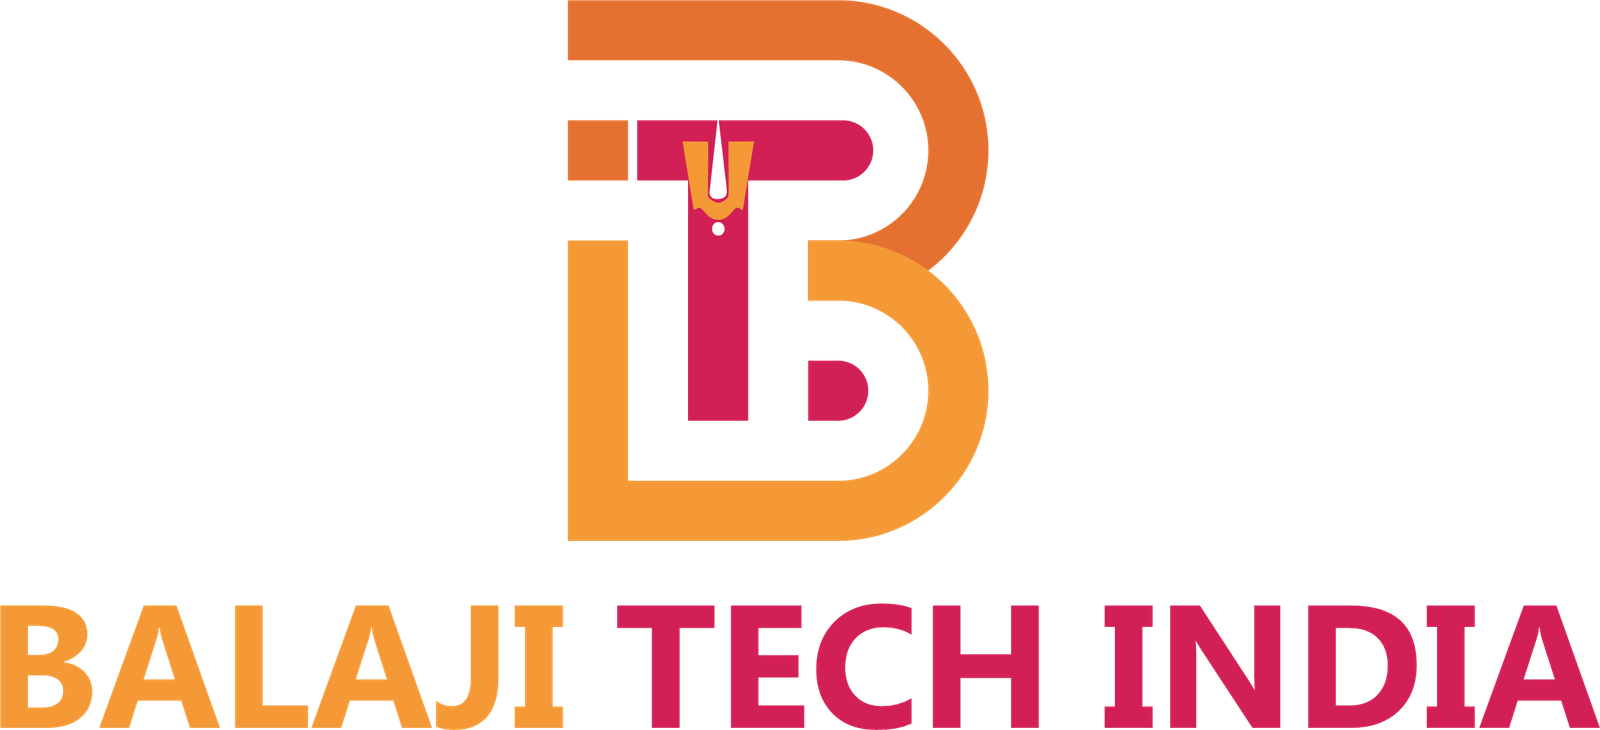 Balaji Tech India